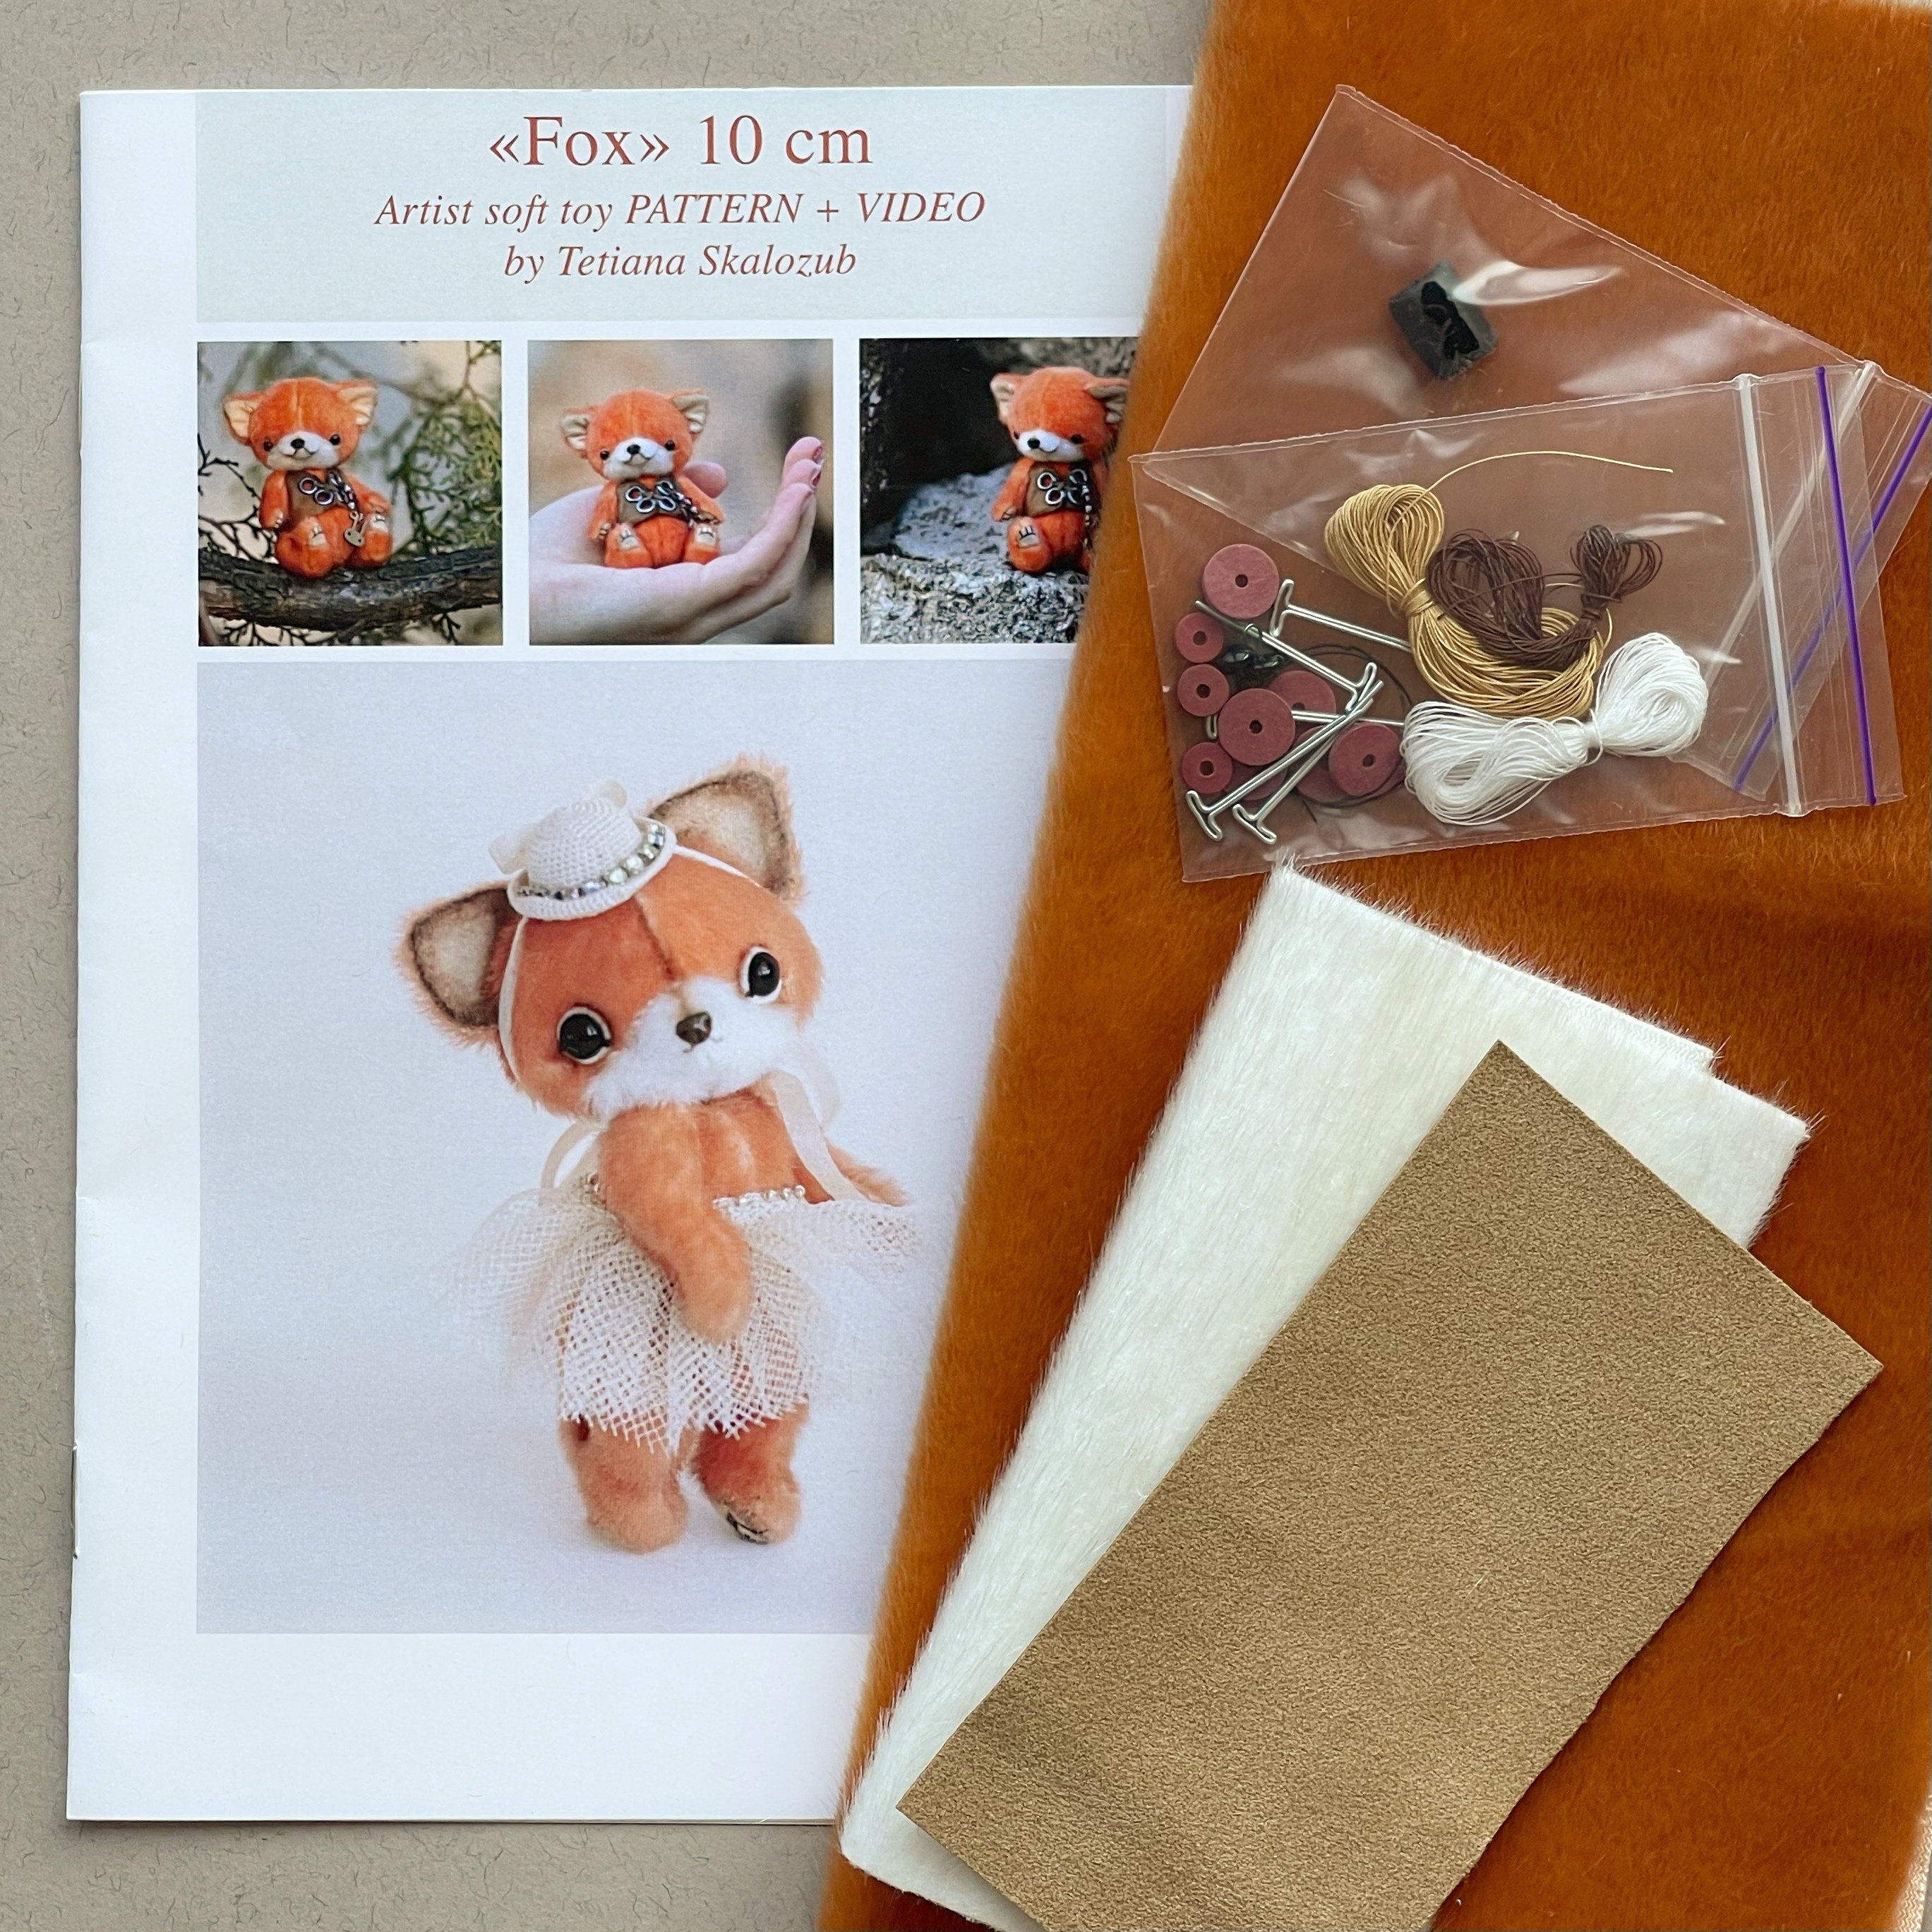 Zorro - DIY KIT toy Mini fox sewing KIT, step-by-step tutorials, mini toy pattern, stuffed animals pattern, soft toy sewing kit pattern